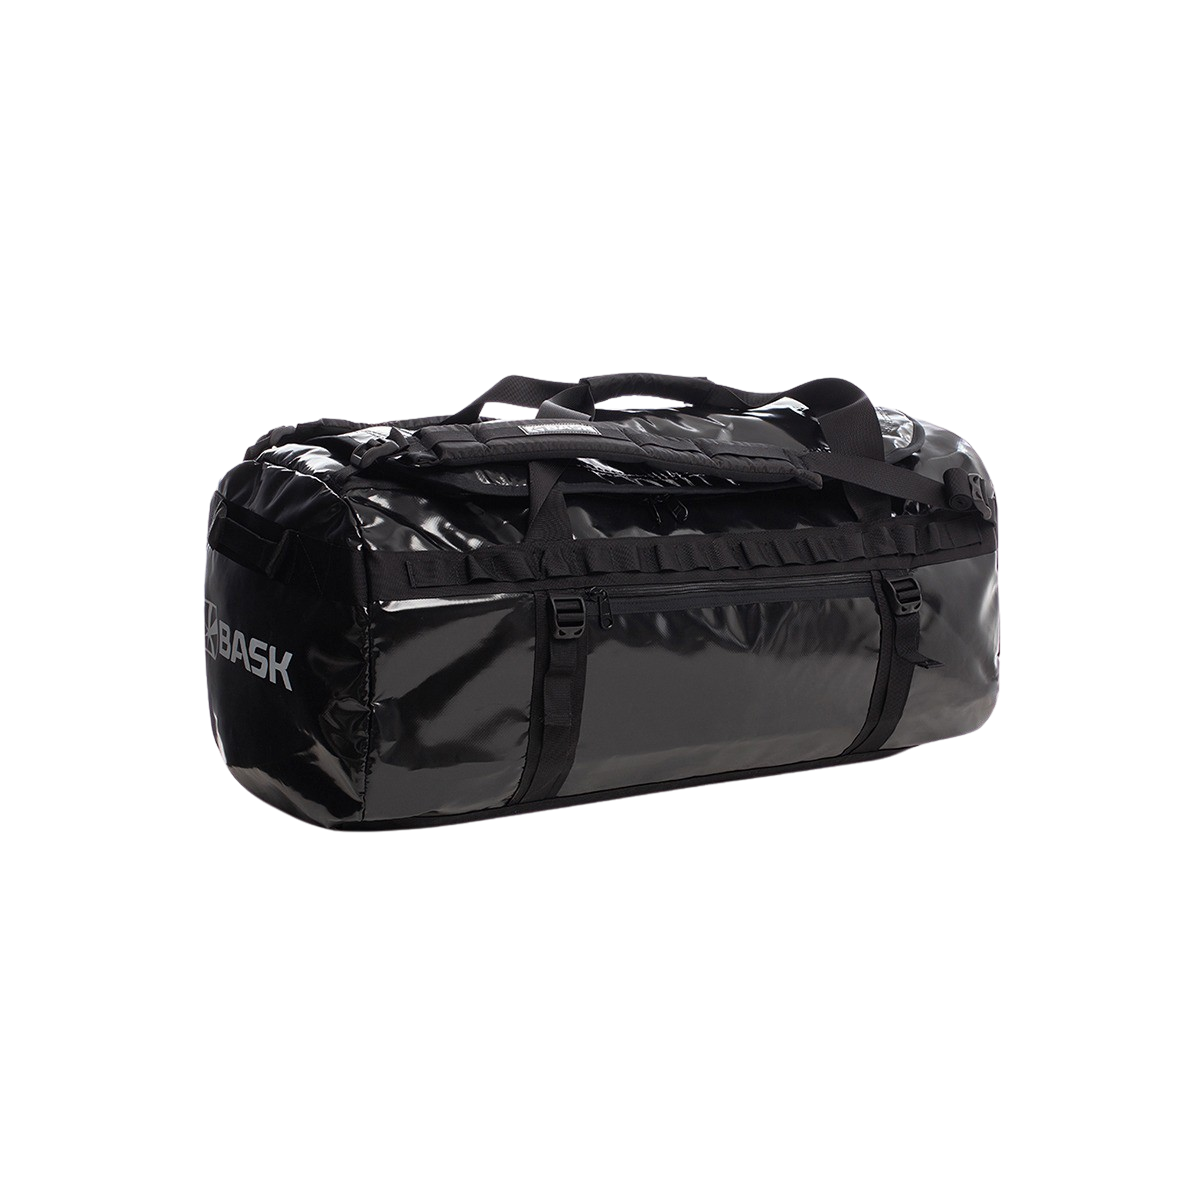 Сумка BASK, цвет черный 2345-9009 Transport 100 v2 - фото 1